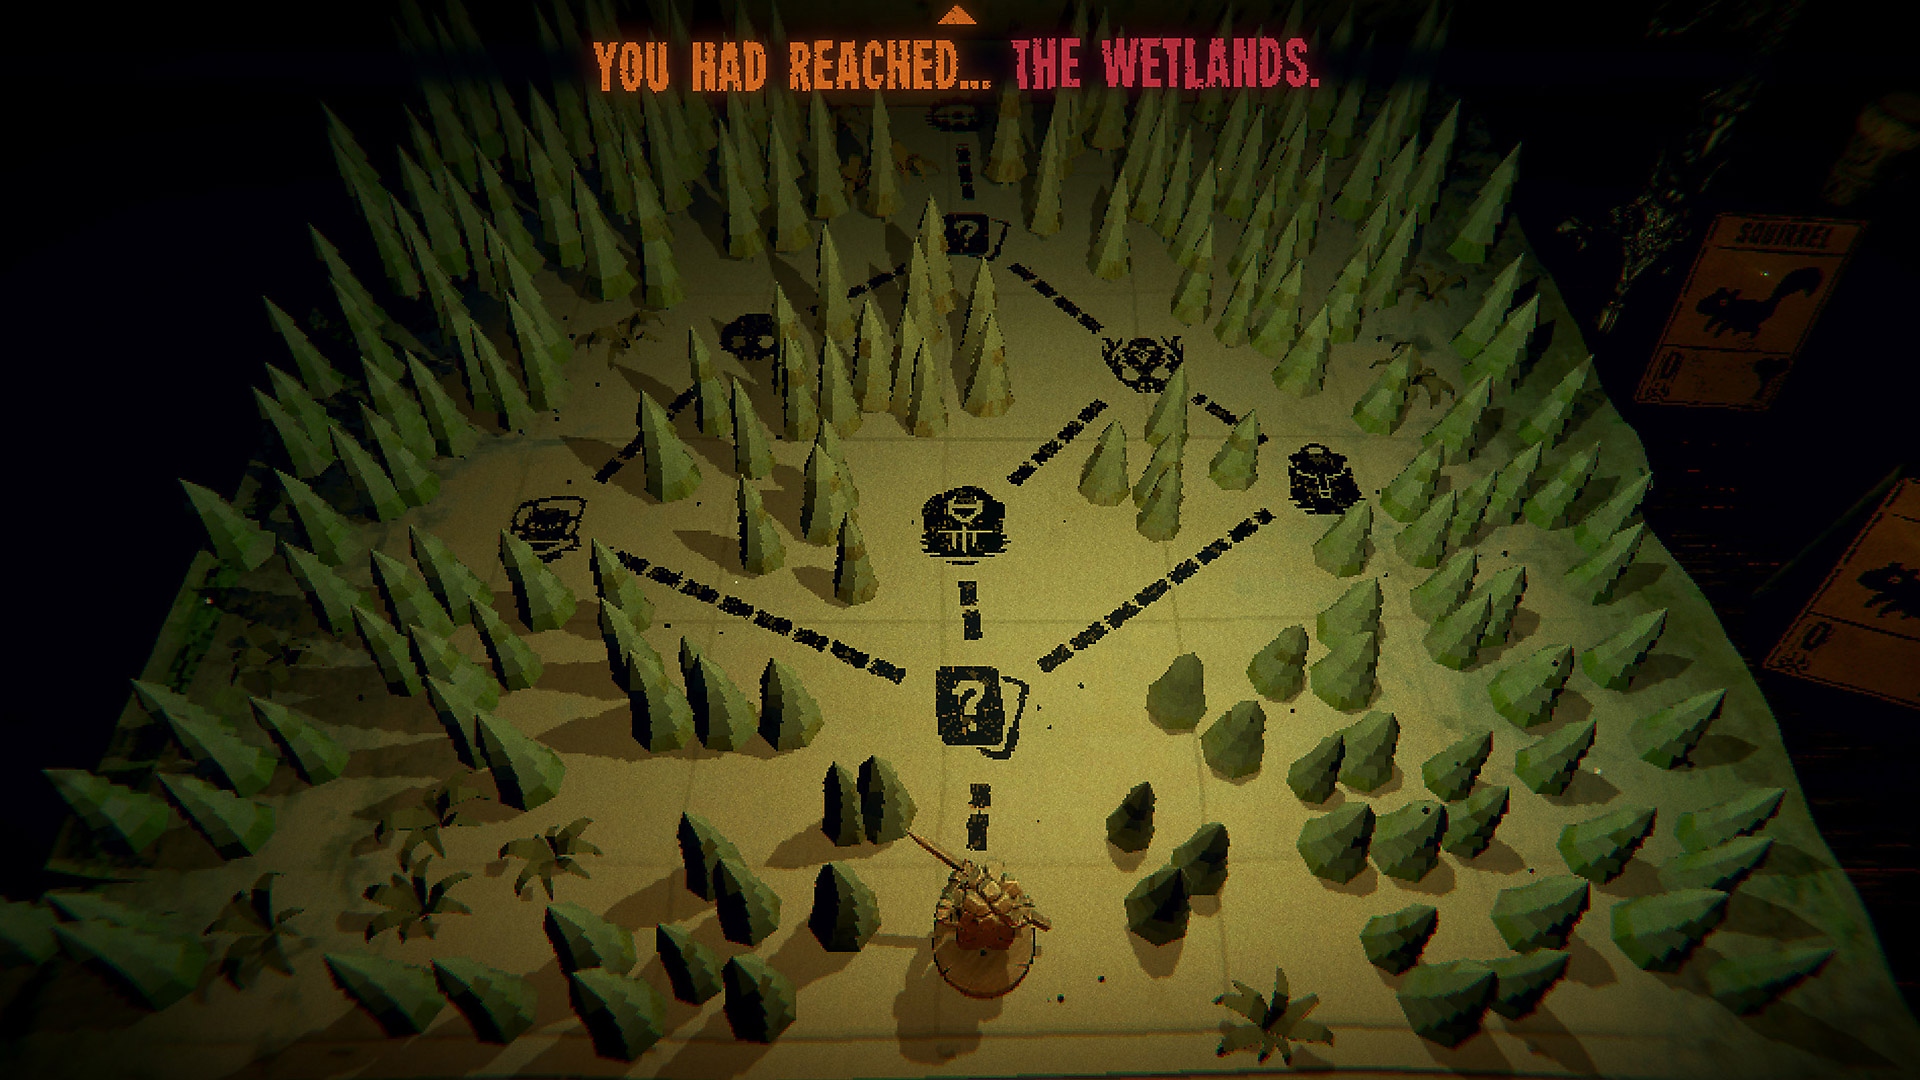 Captura de pantalla del juego de Inscryption con un mapa de una zona boscosa con múltiples caminos entre los árboles.